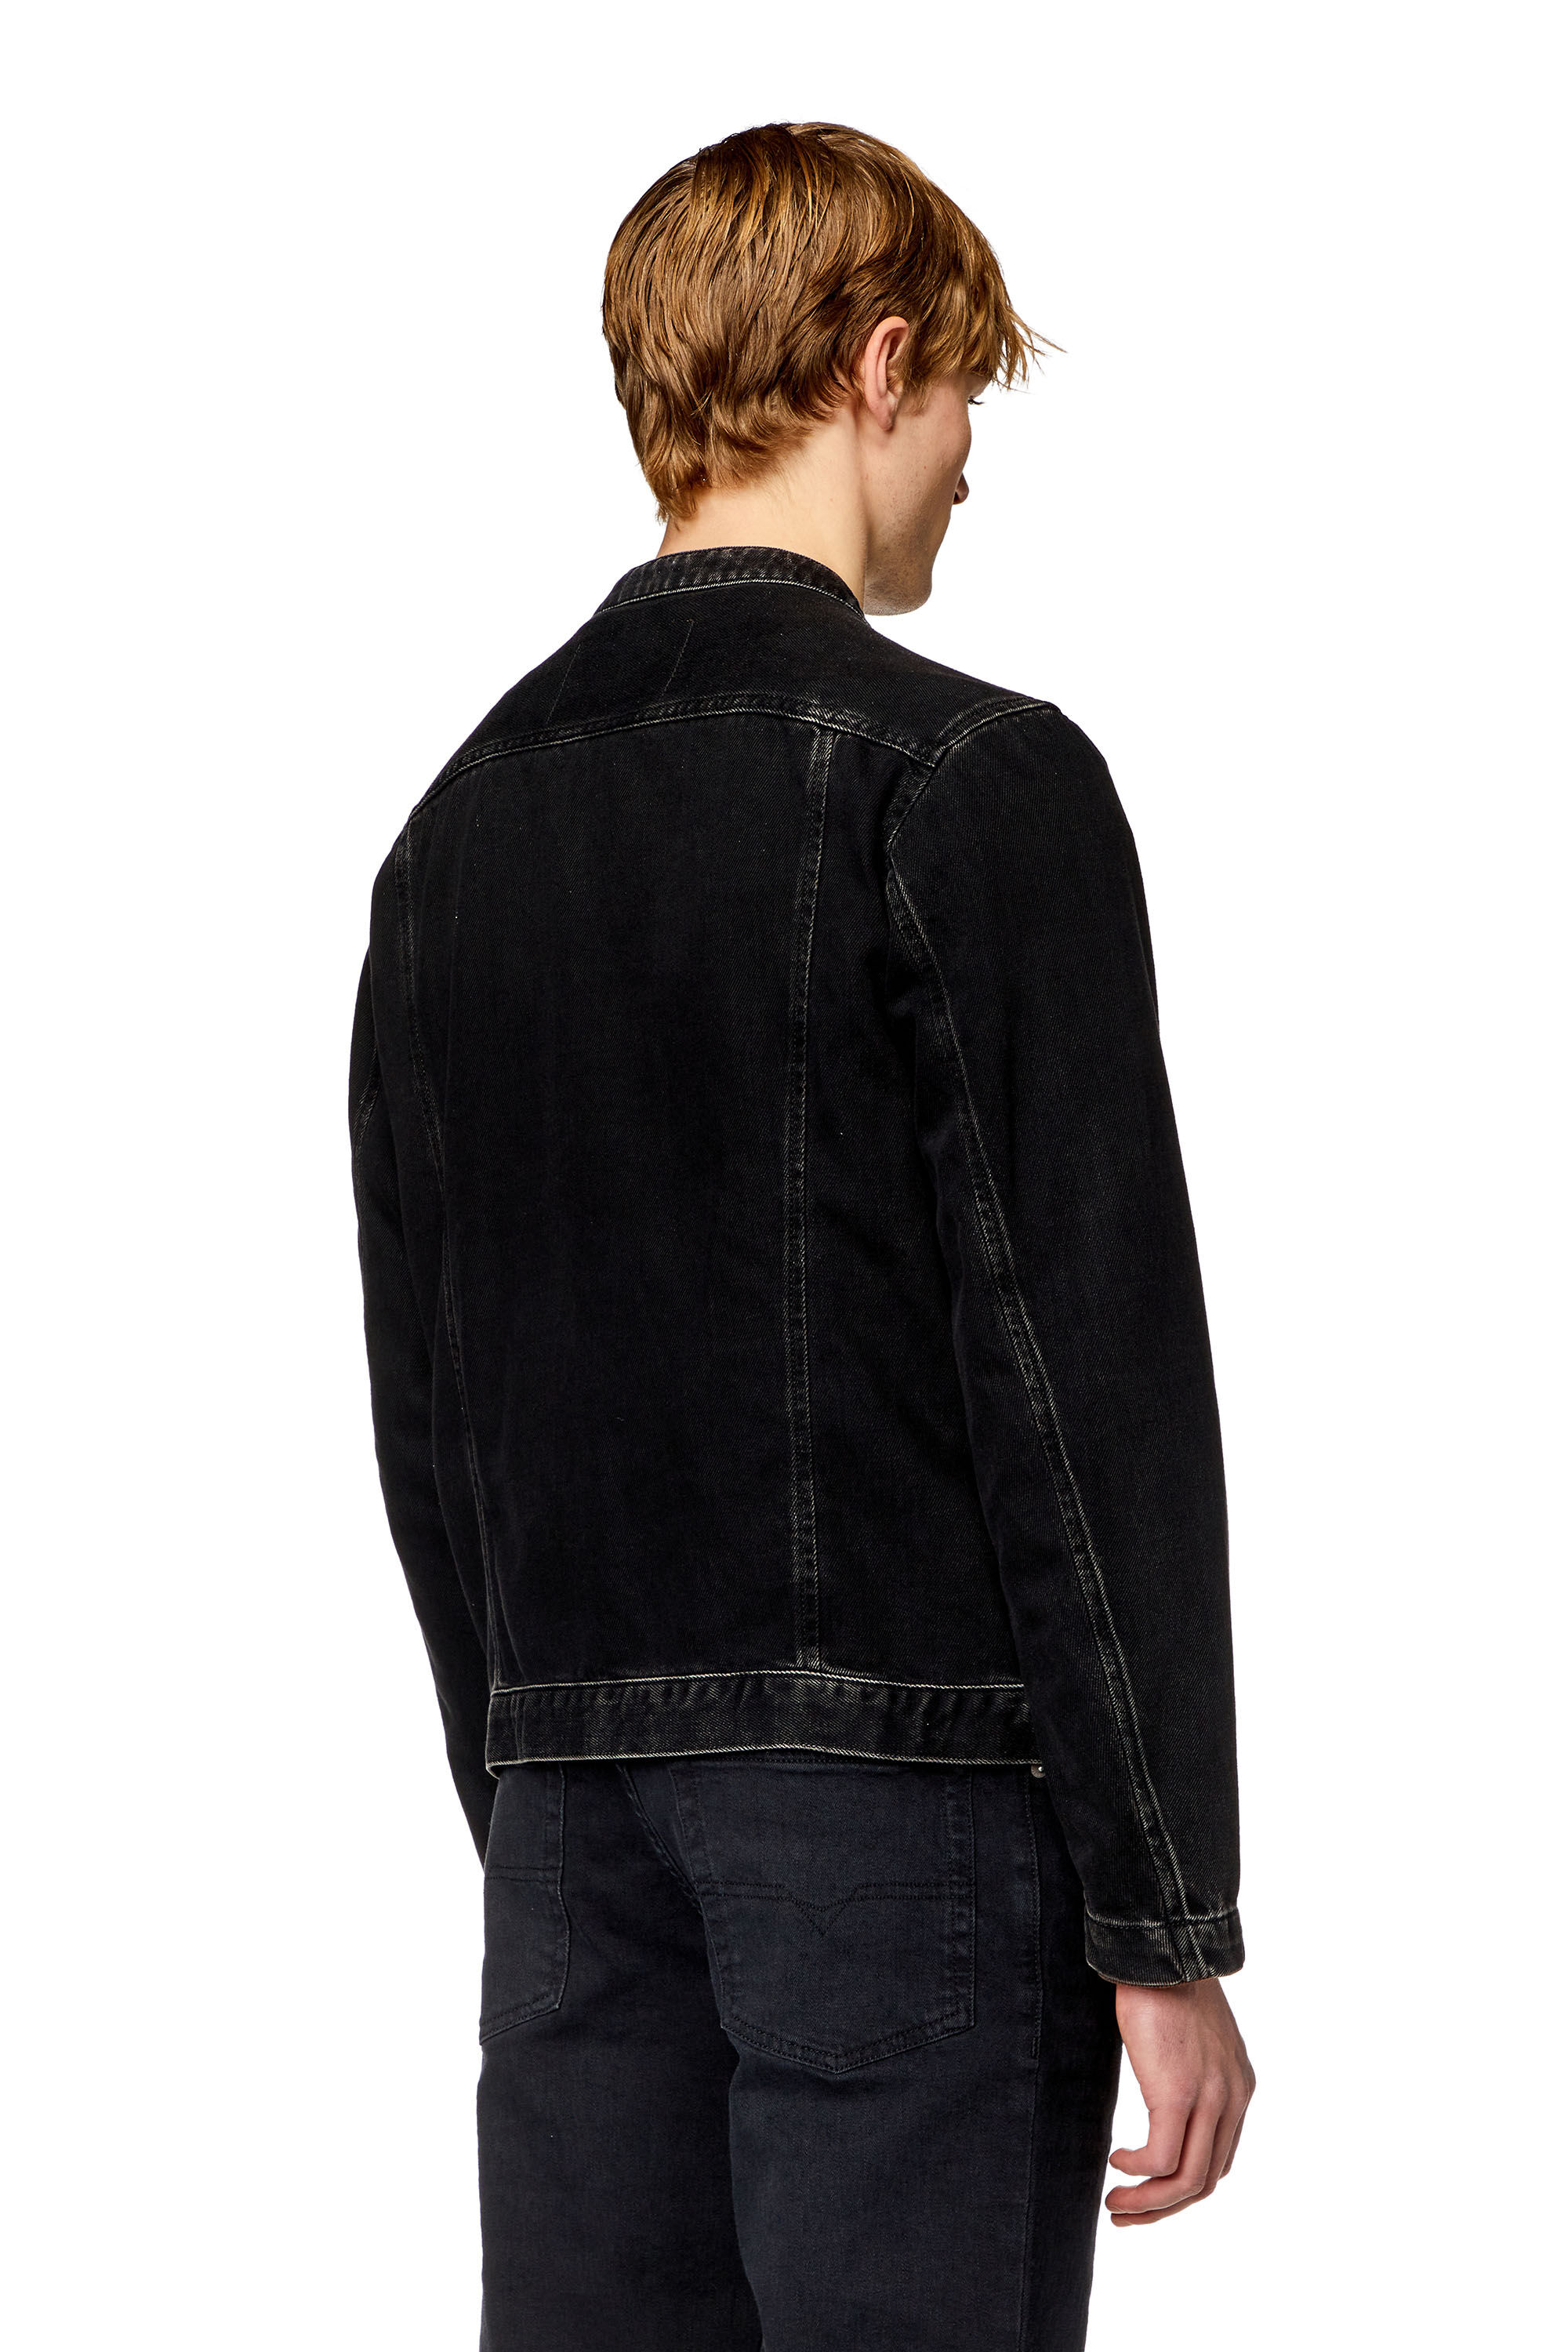 Diesel - D-GLORY, Man Moto jacket in clean-wash denim in Black - Image 4